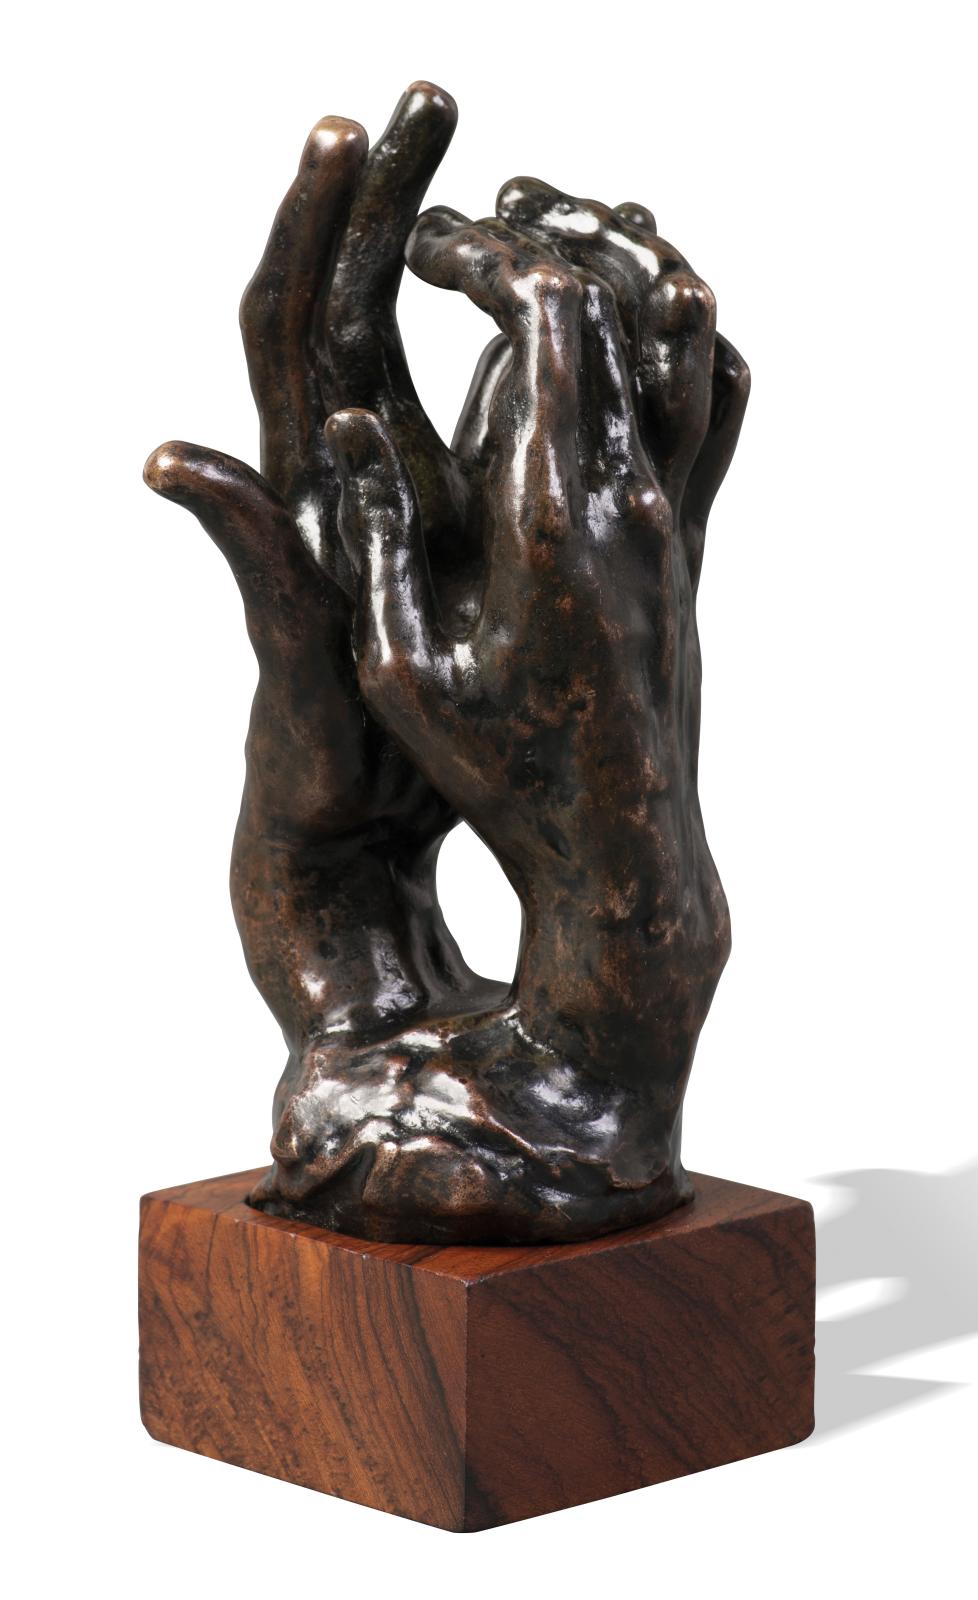 40 000/60 000 € seront nécessaires pour décrocher cet assemblage de main gauche et de main droite en bronze à patine brune, signé Auguste Rodin (1840-